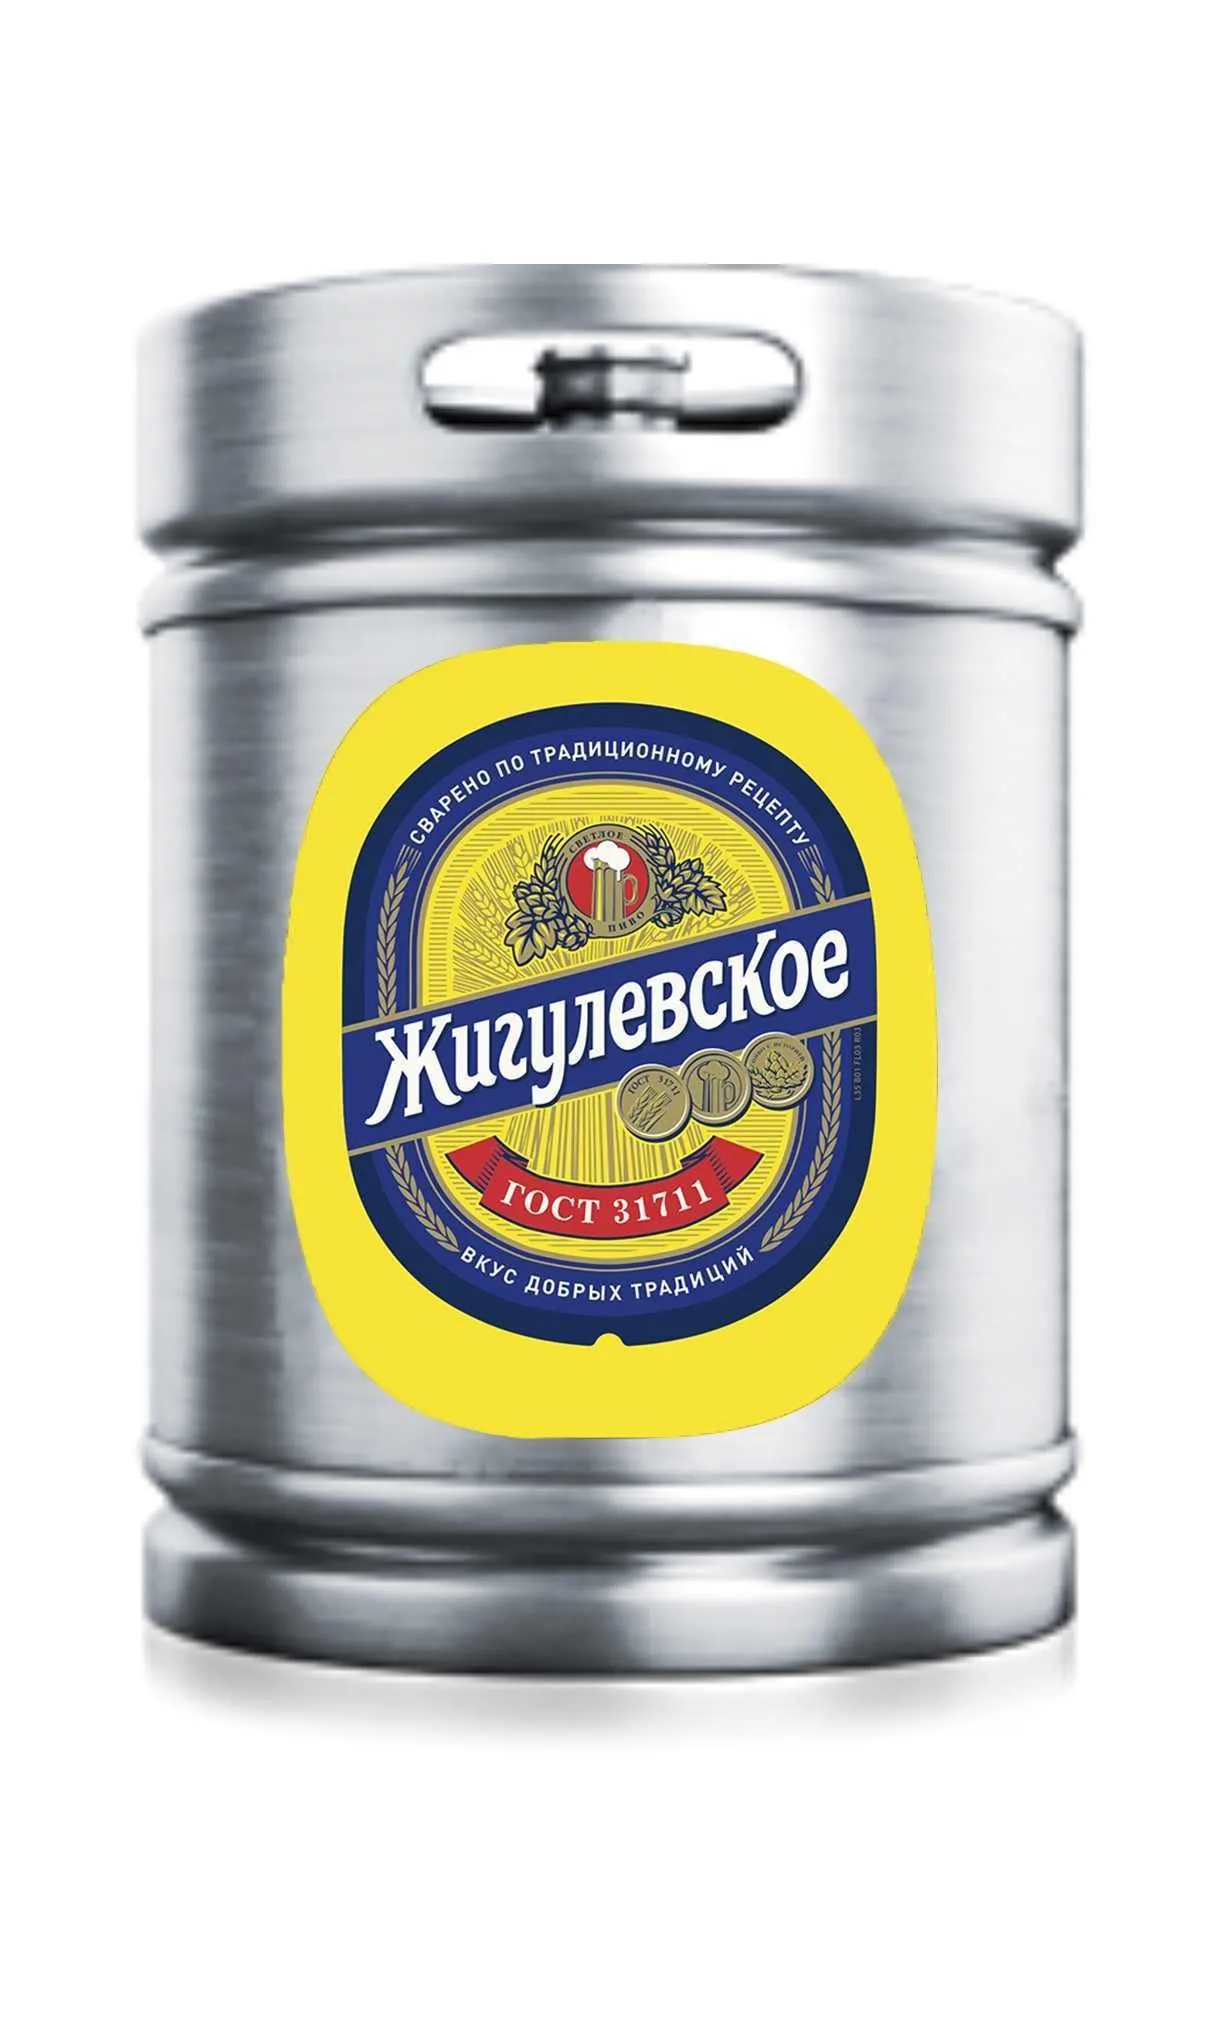 Пиво Жигулевское Екатеринбург 4,3%